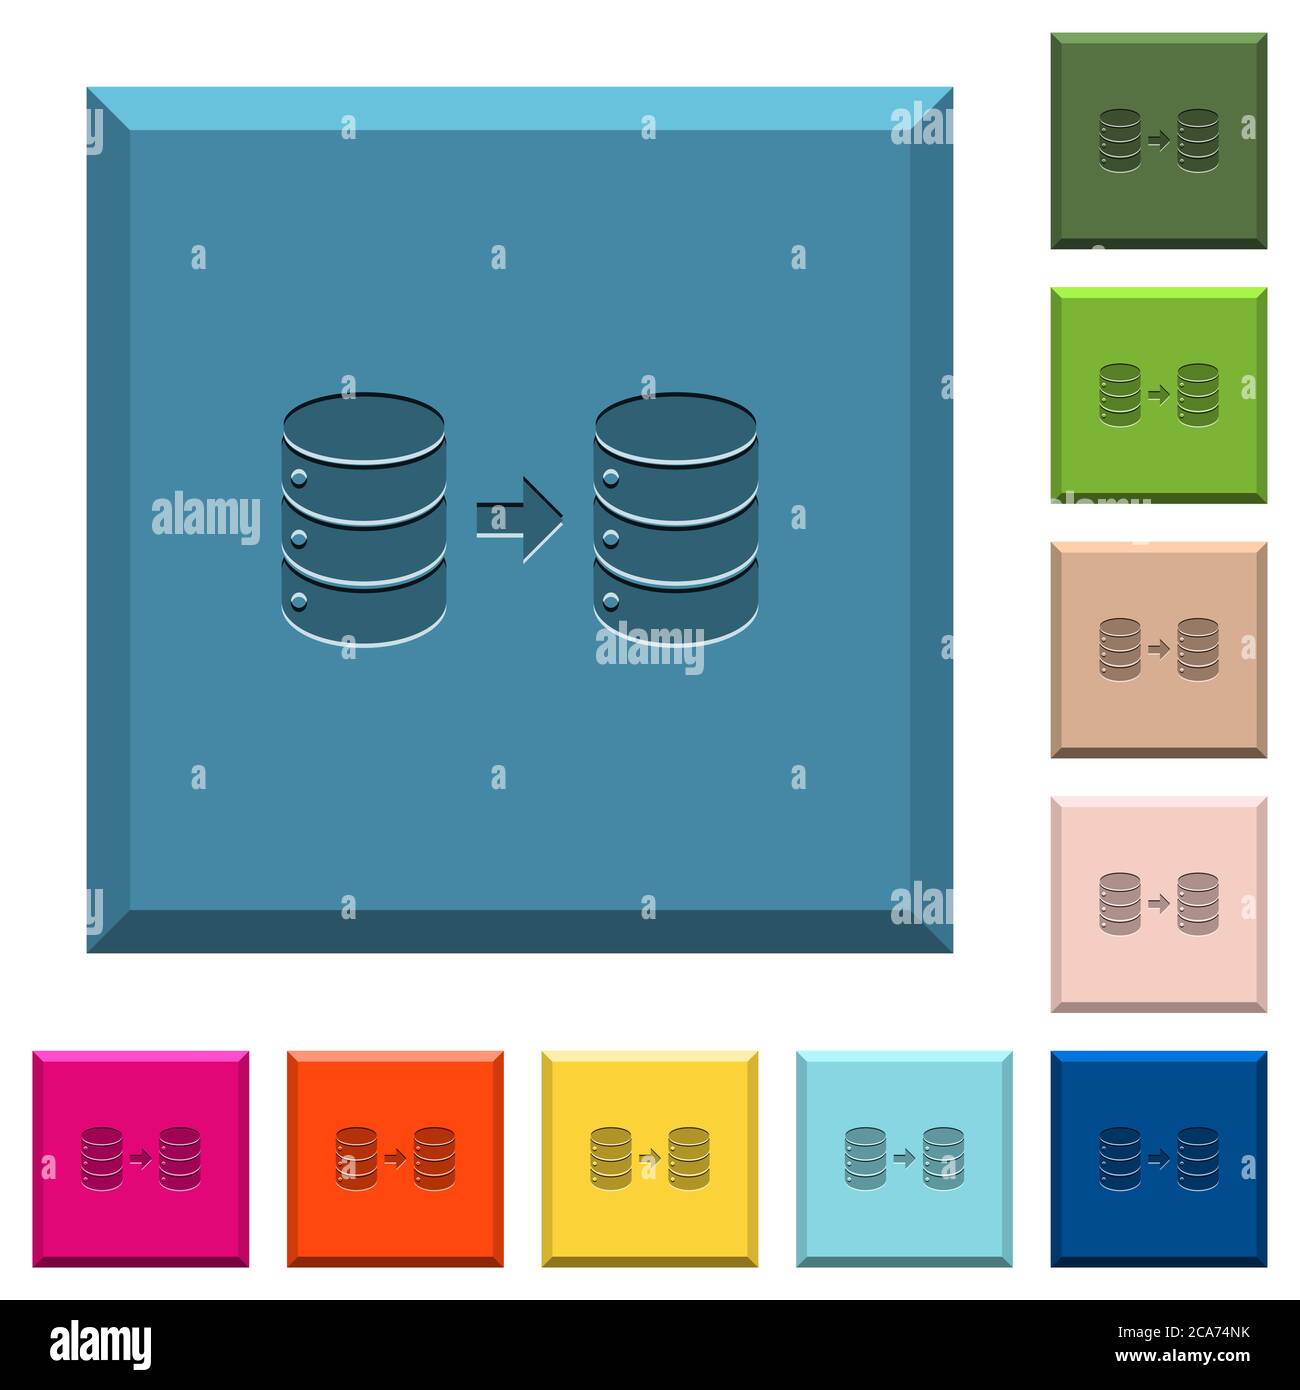 Datenbankspiegelung gravierte Icons auf kantigen quadratischen Knöpfen in verschiedenen trendigen Farben Stock Vektor